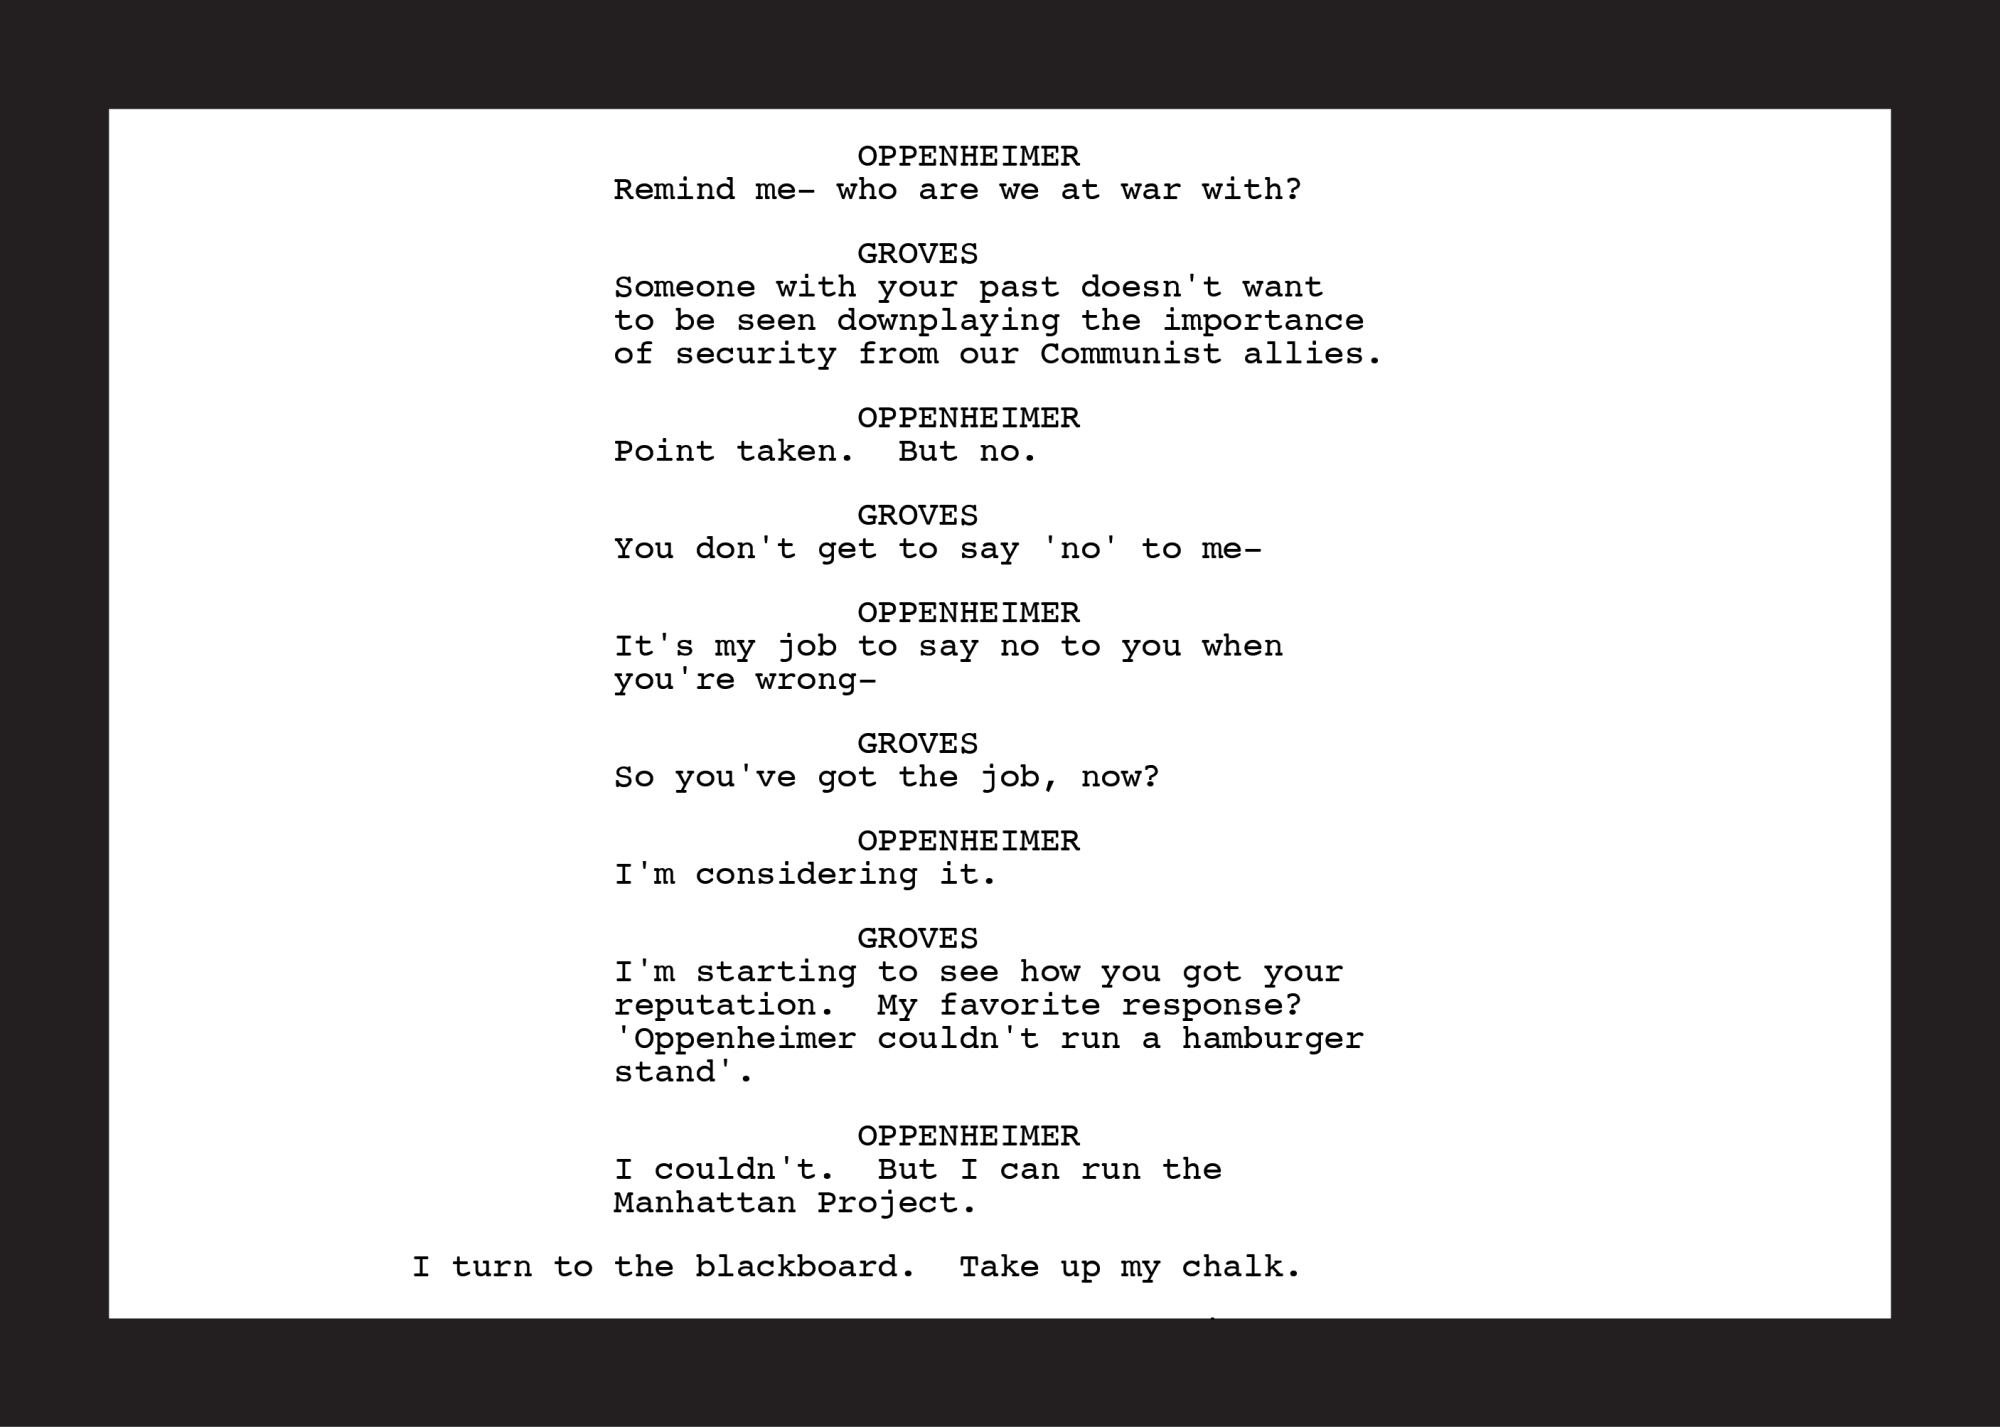 Oppenheimer Script for scene where Groves recruits Oppenheimer